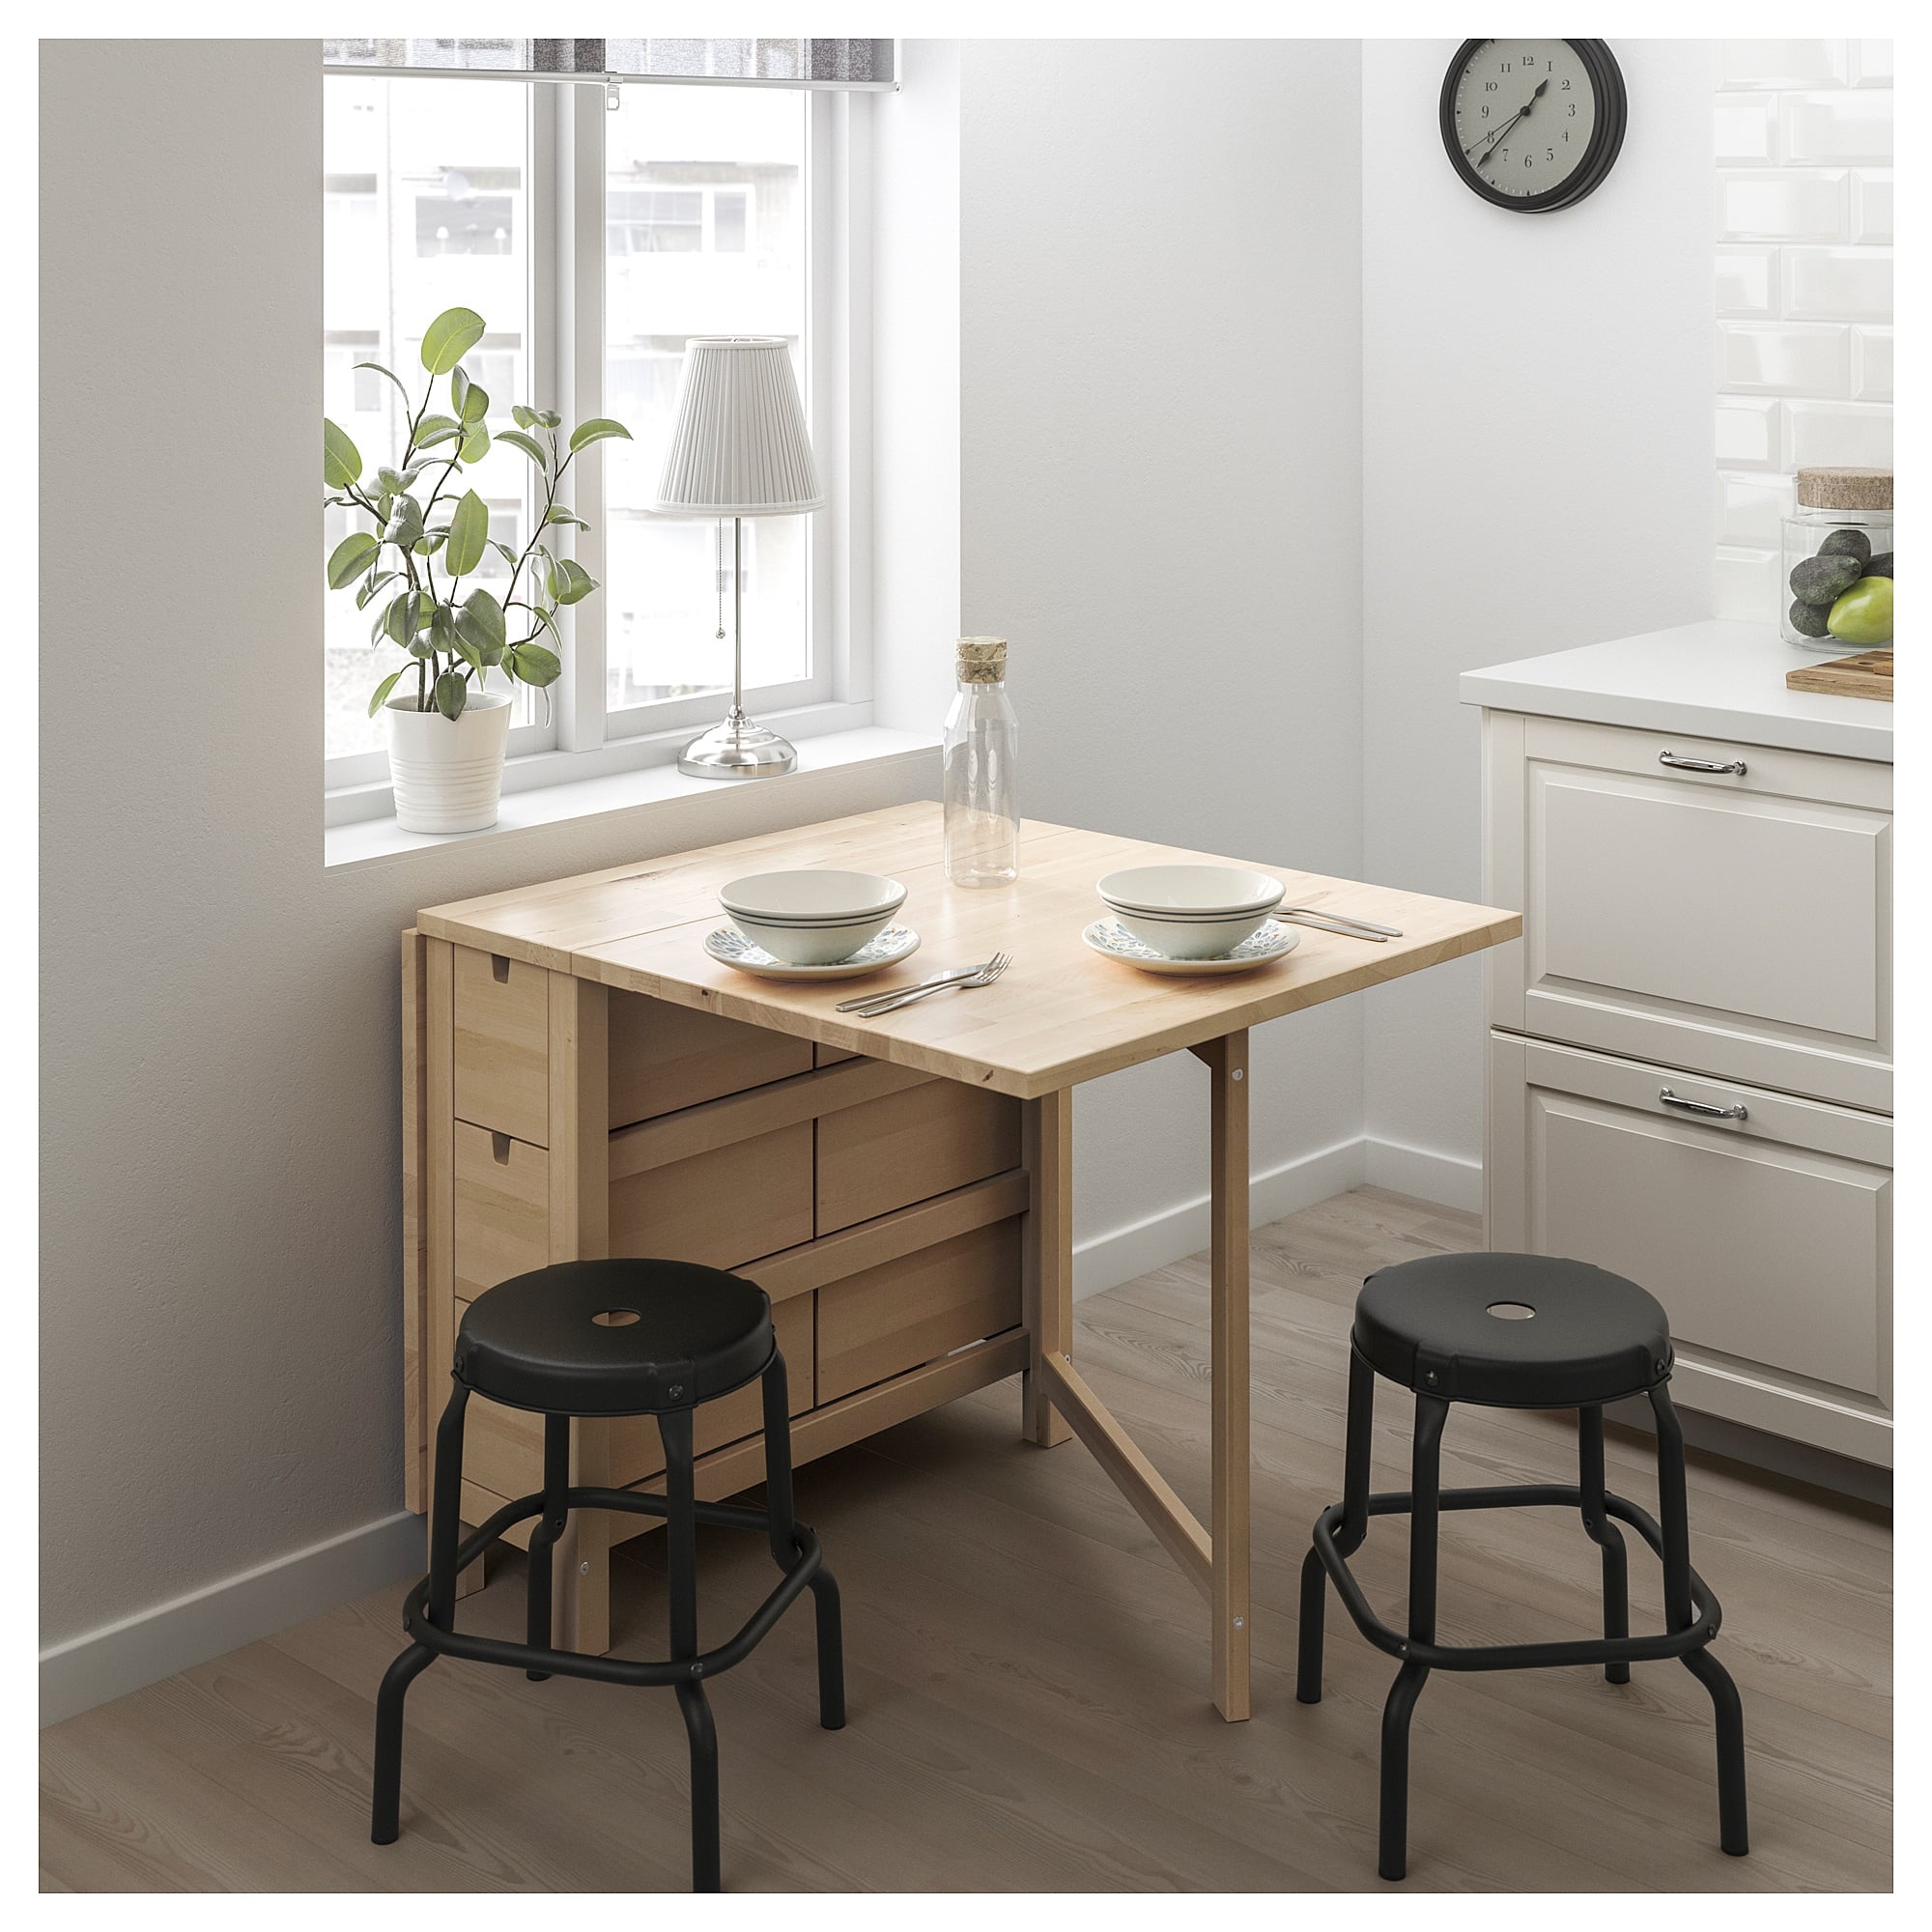 Norden Gateleg Table Best Ikea Kitchen Furniture With Storage Popsugar Home Australia Photo 16